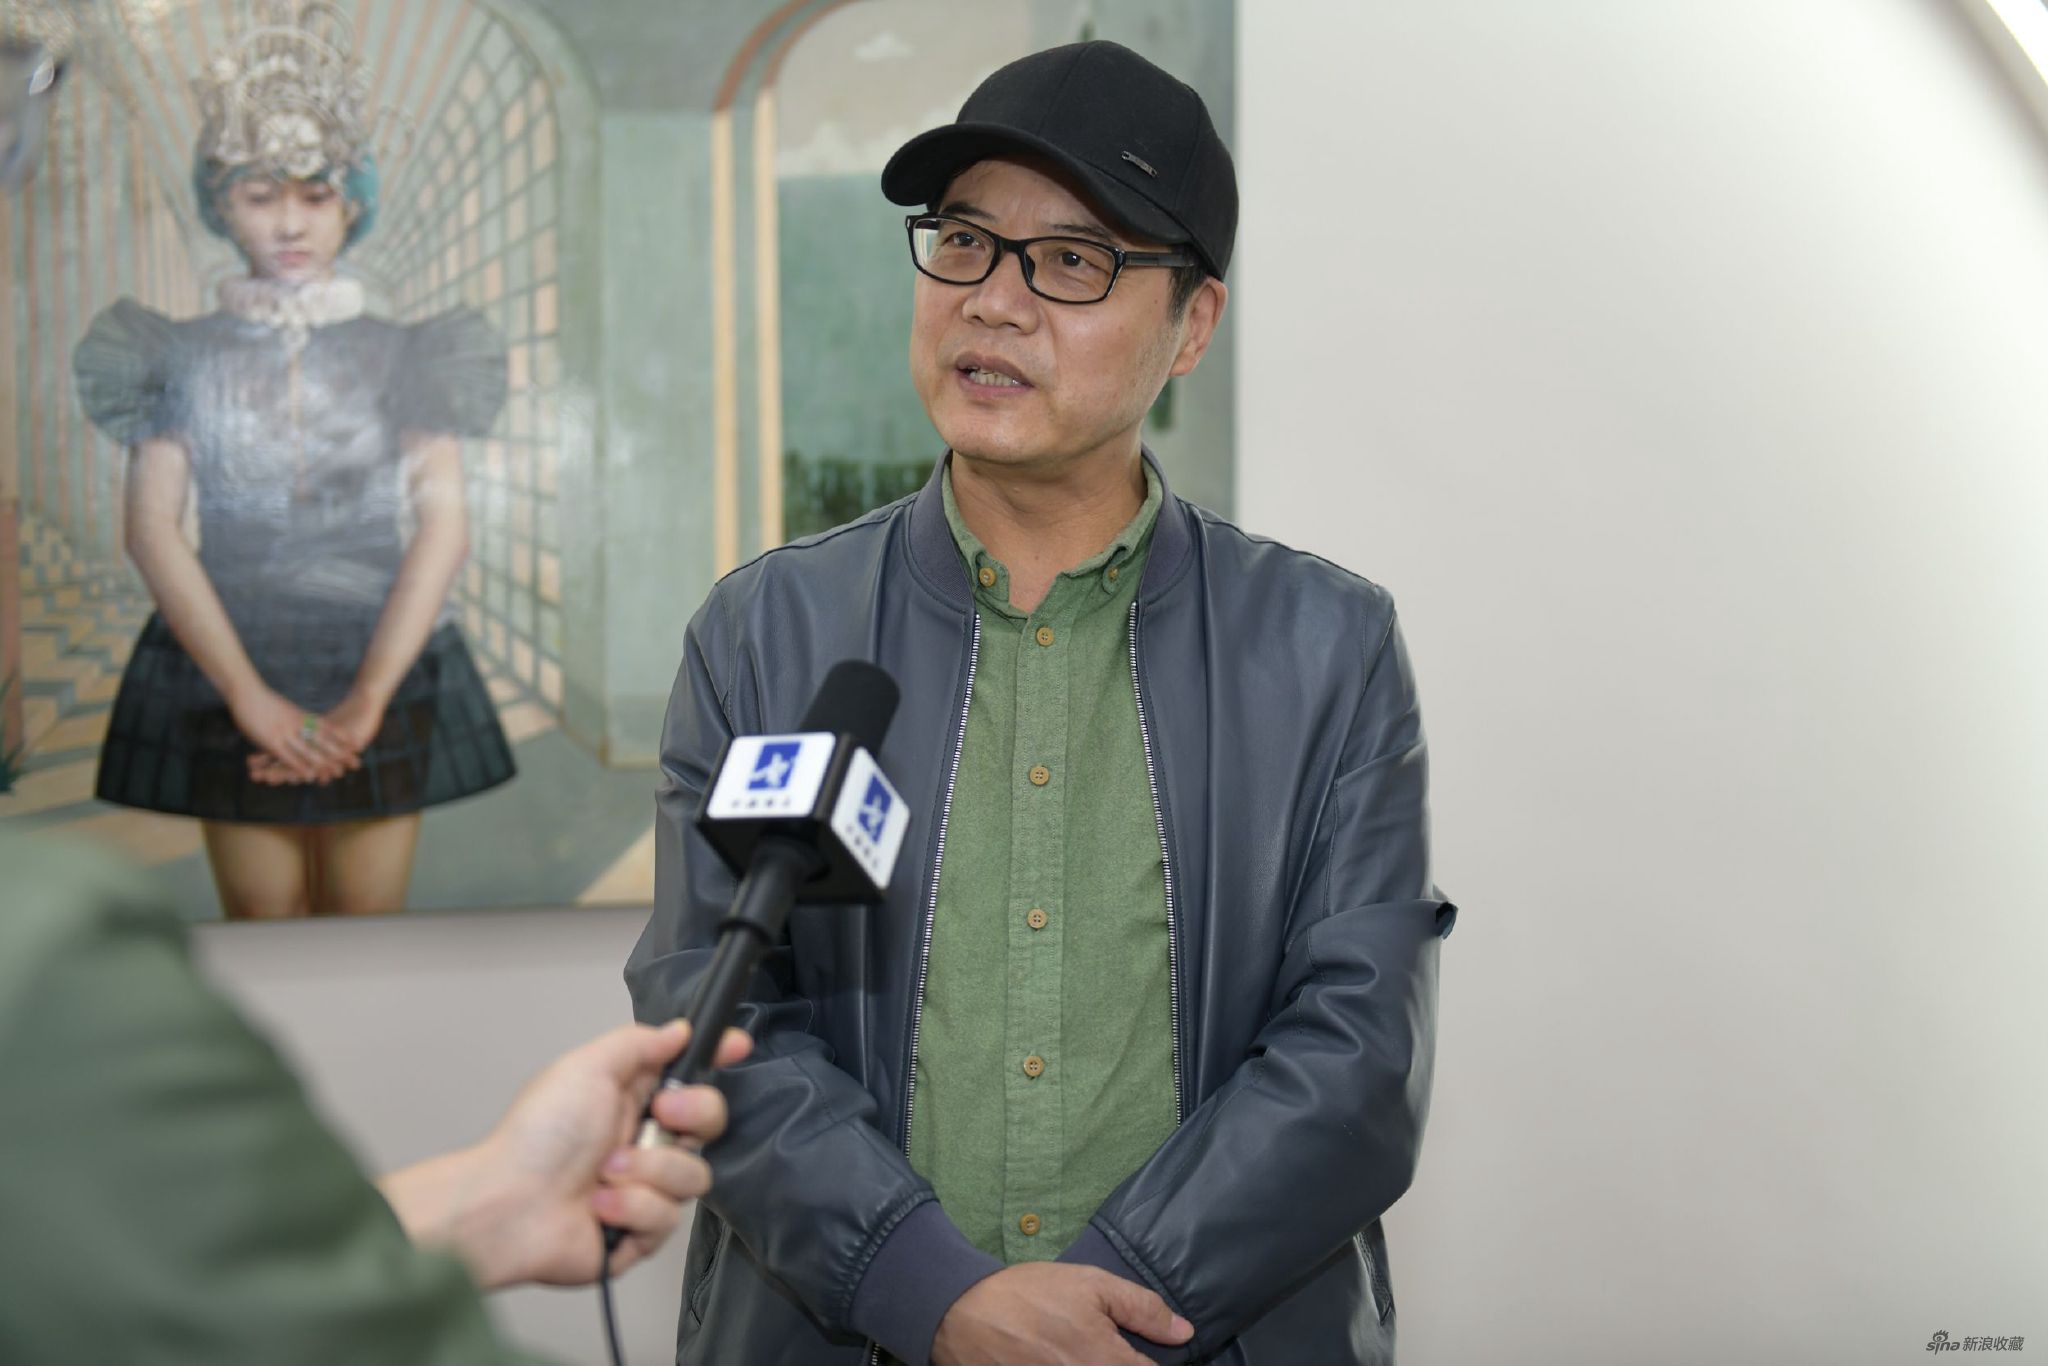 中央美术学院美术馆副馆长王春辰接受媒体采访